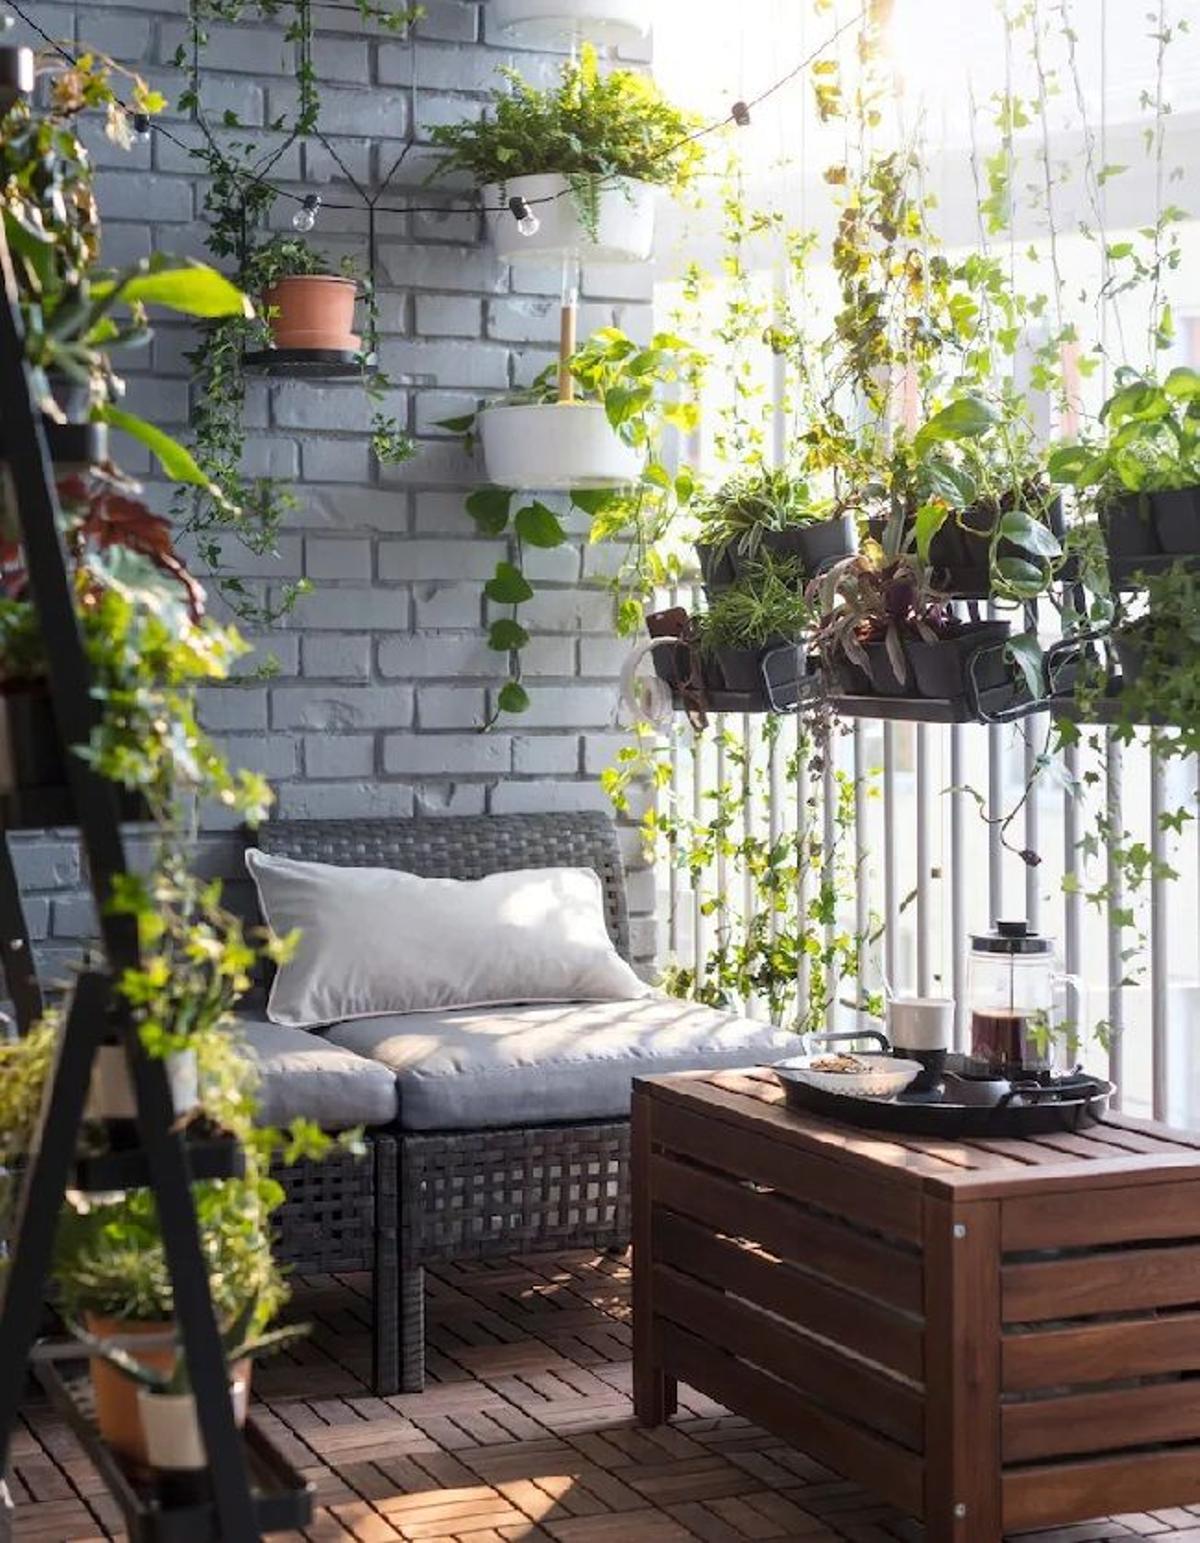 Un jardín vertical en el balcón, la idea de Ikea para llenar tu casa de plantas